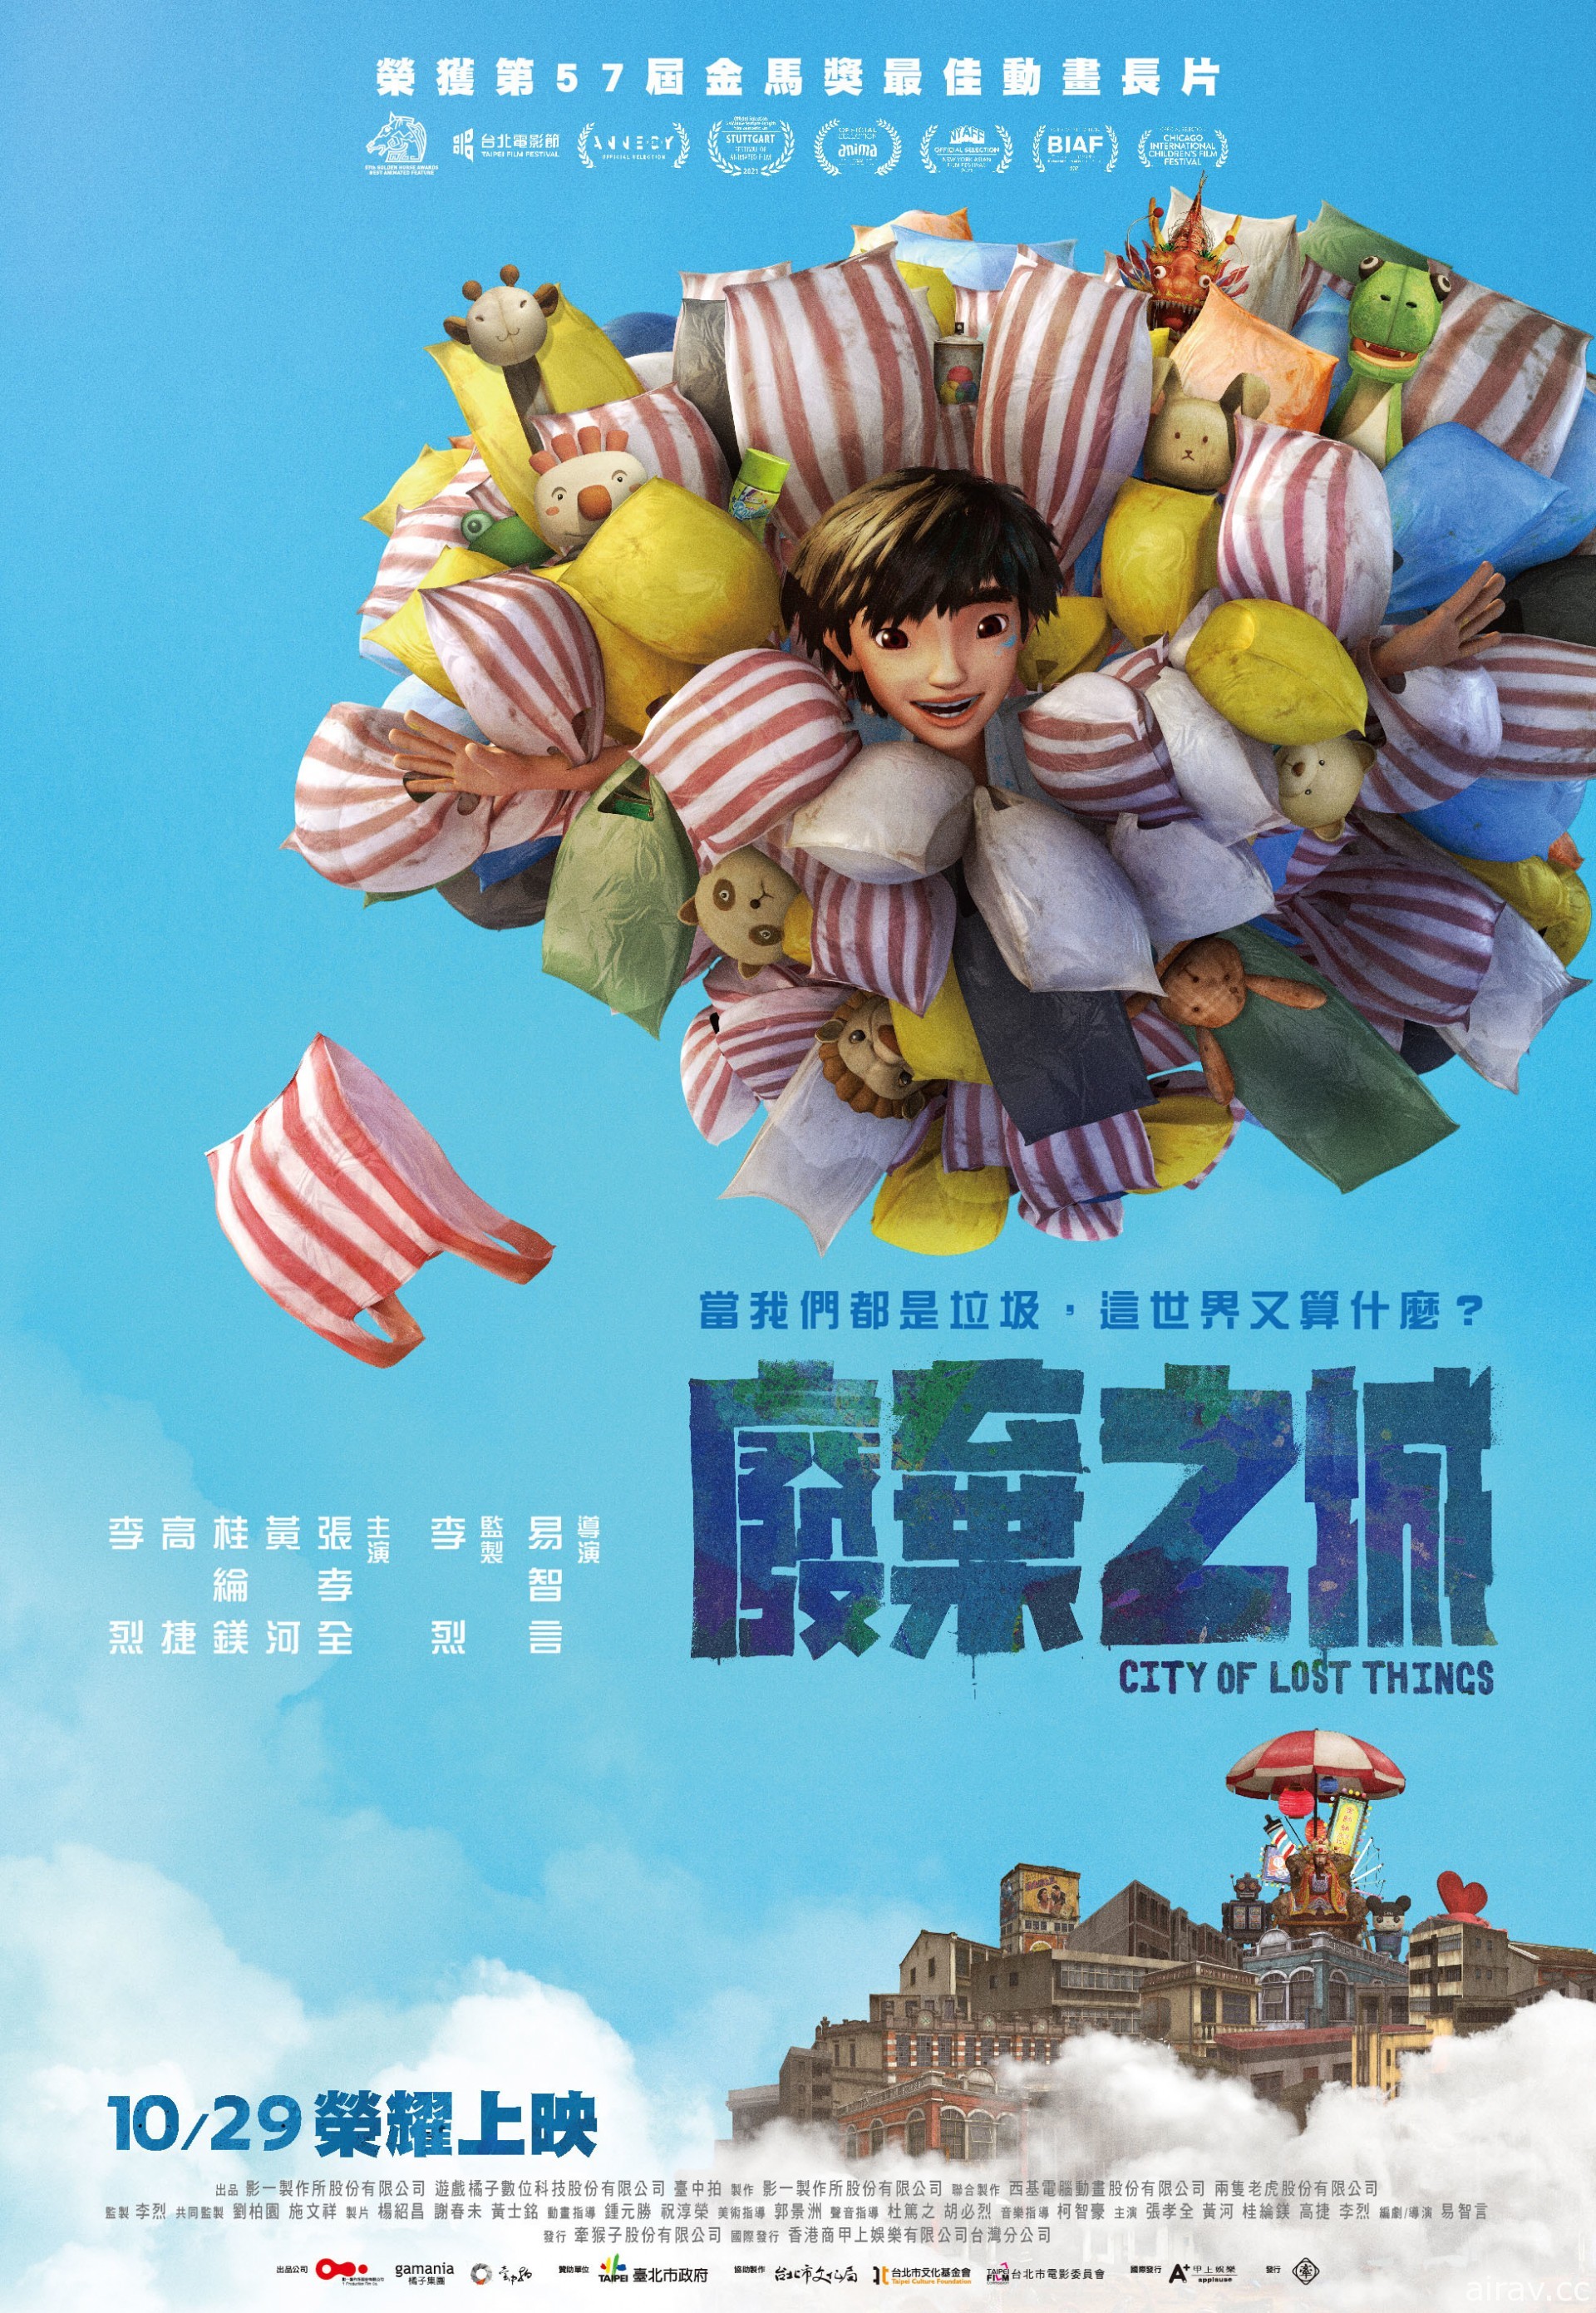 台灣原創動畫《廢棄之城》榮獲芝加哥國際兒童電影節最佳動畫首獎